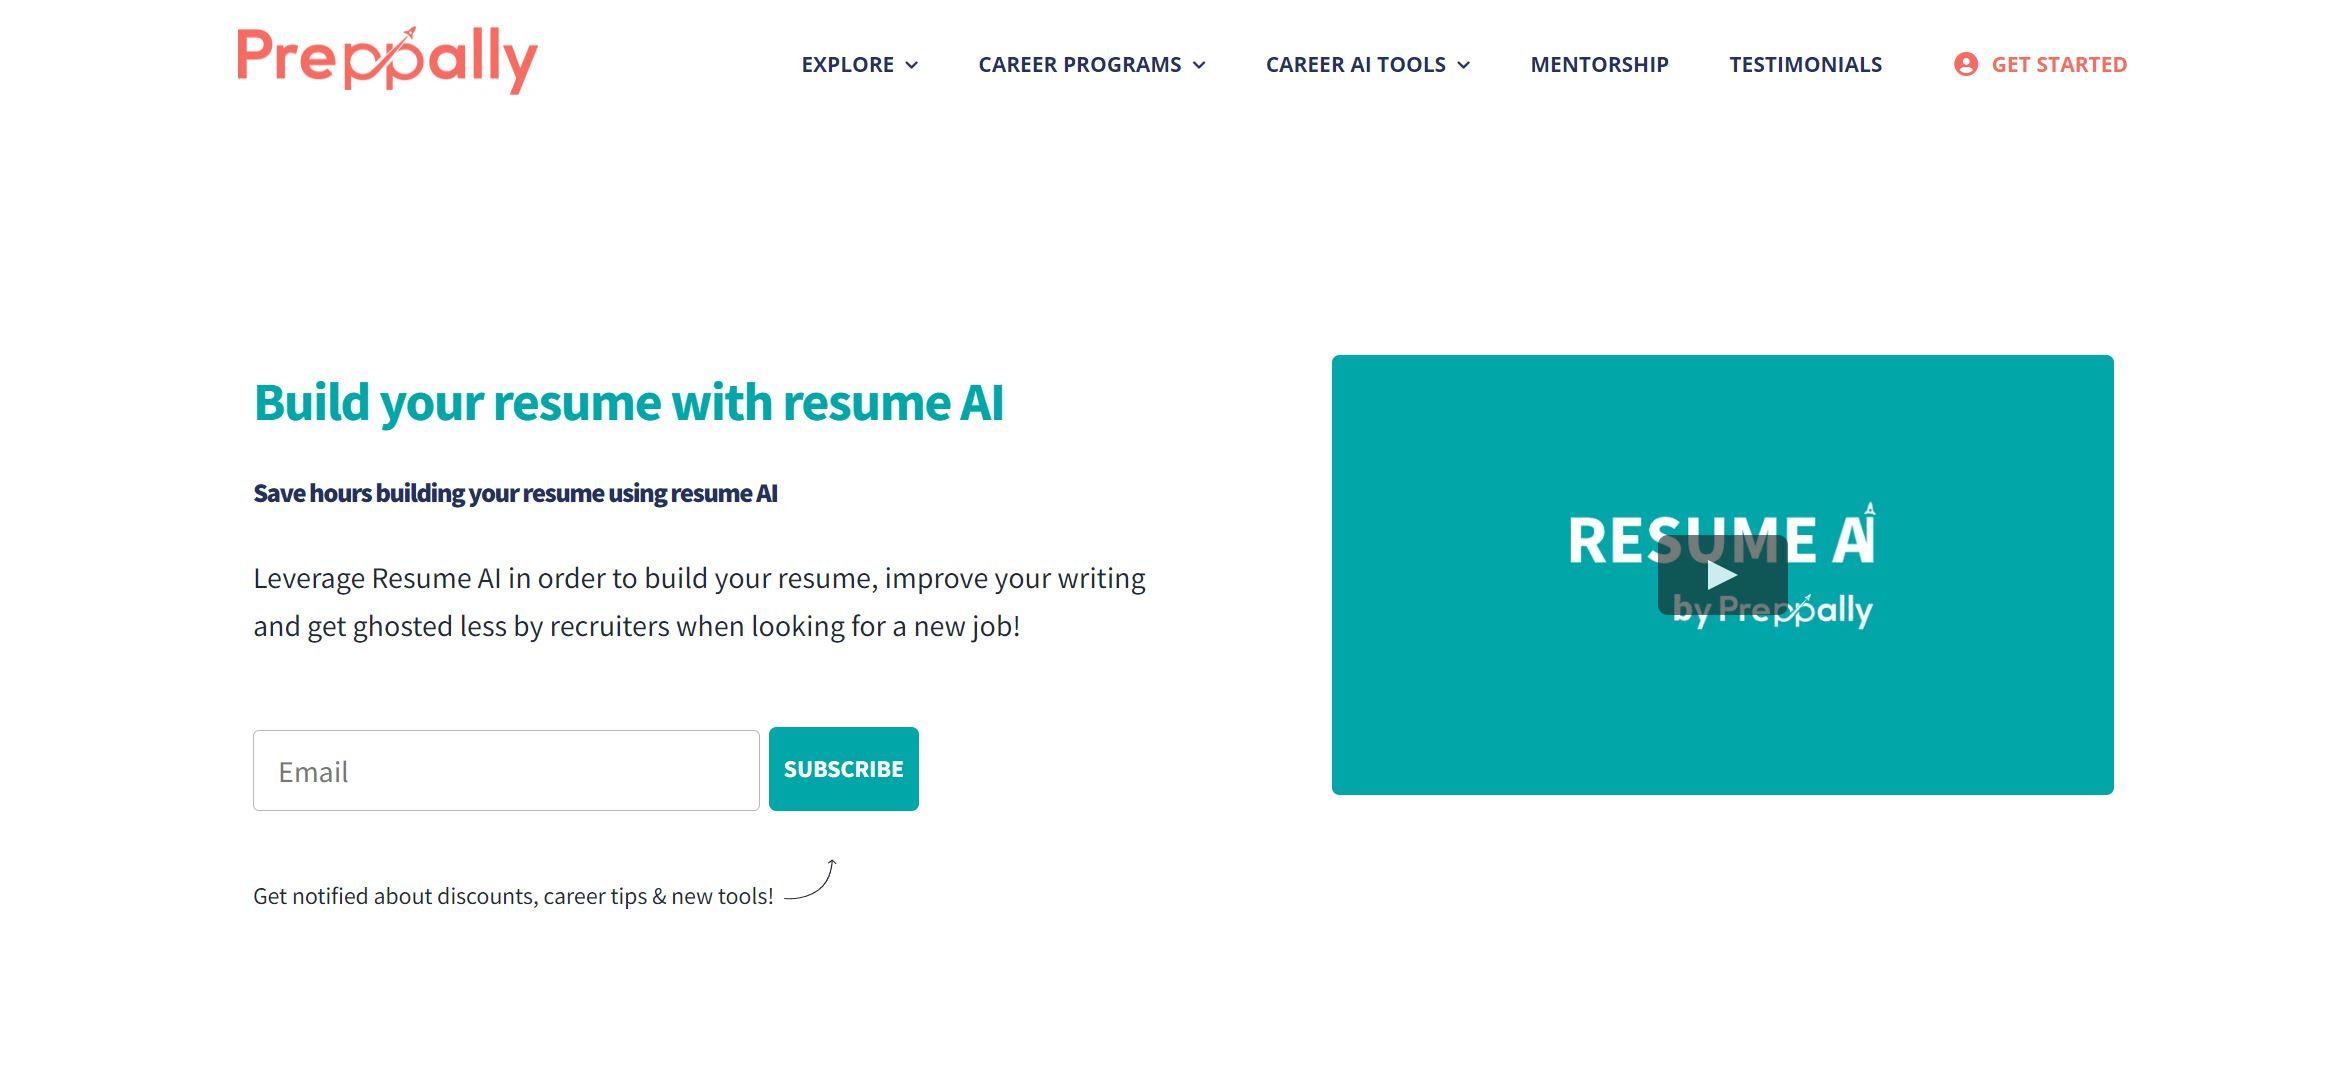 Resume AI | Preppally